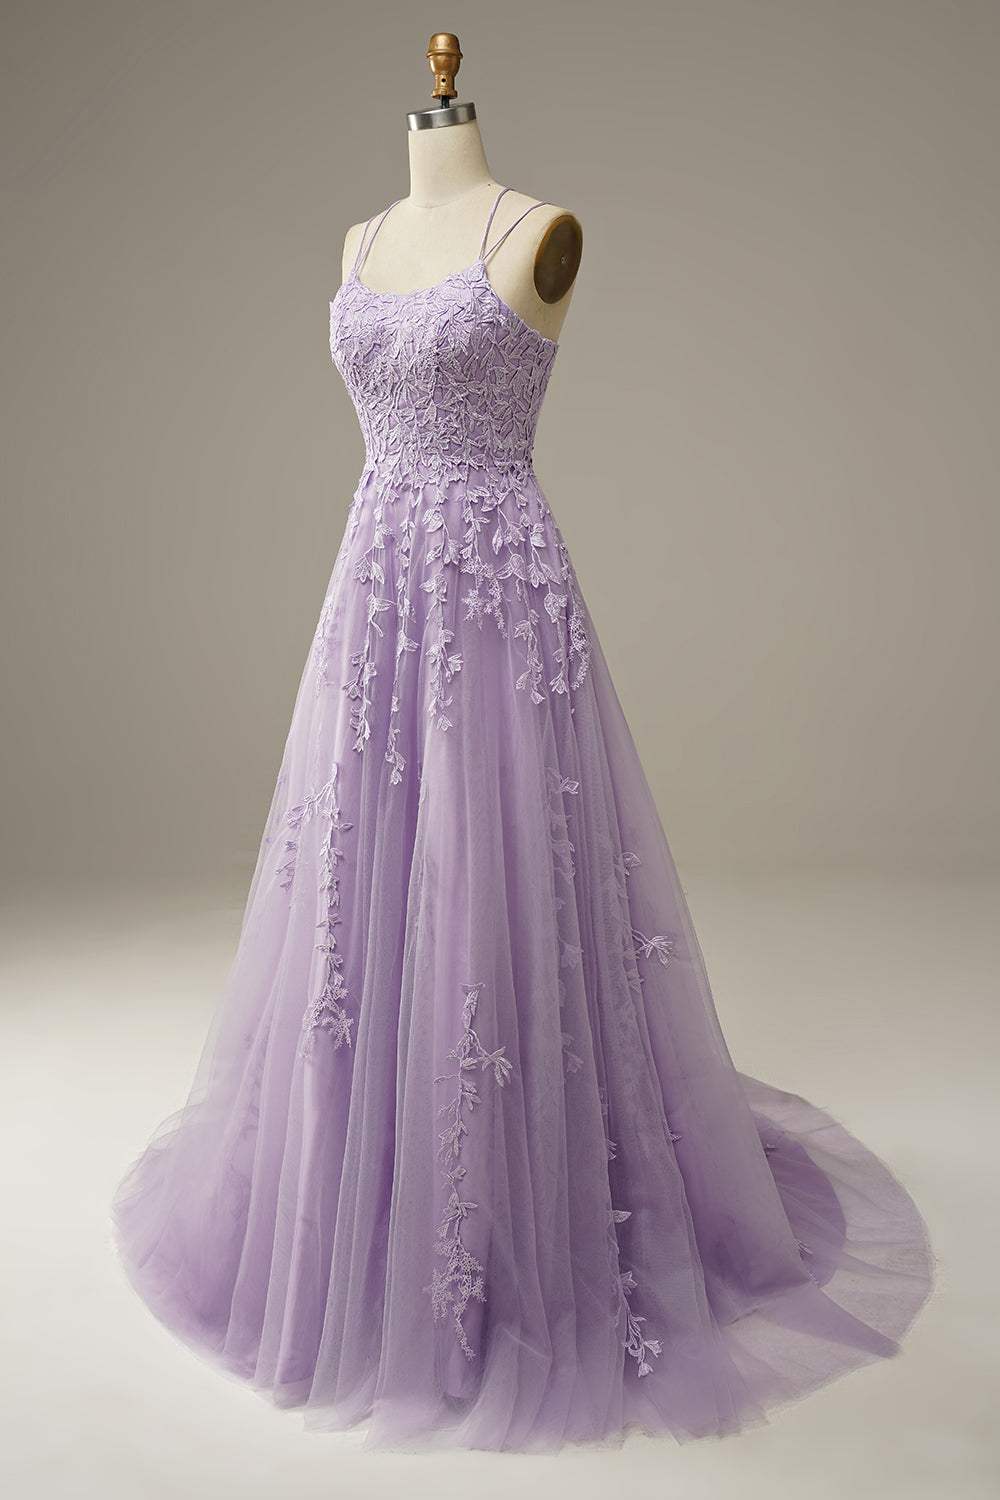 shopalbina2022 Purple Tulle Dress 4Y